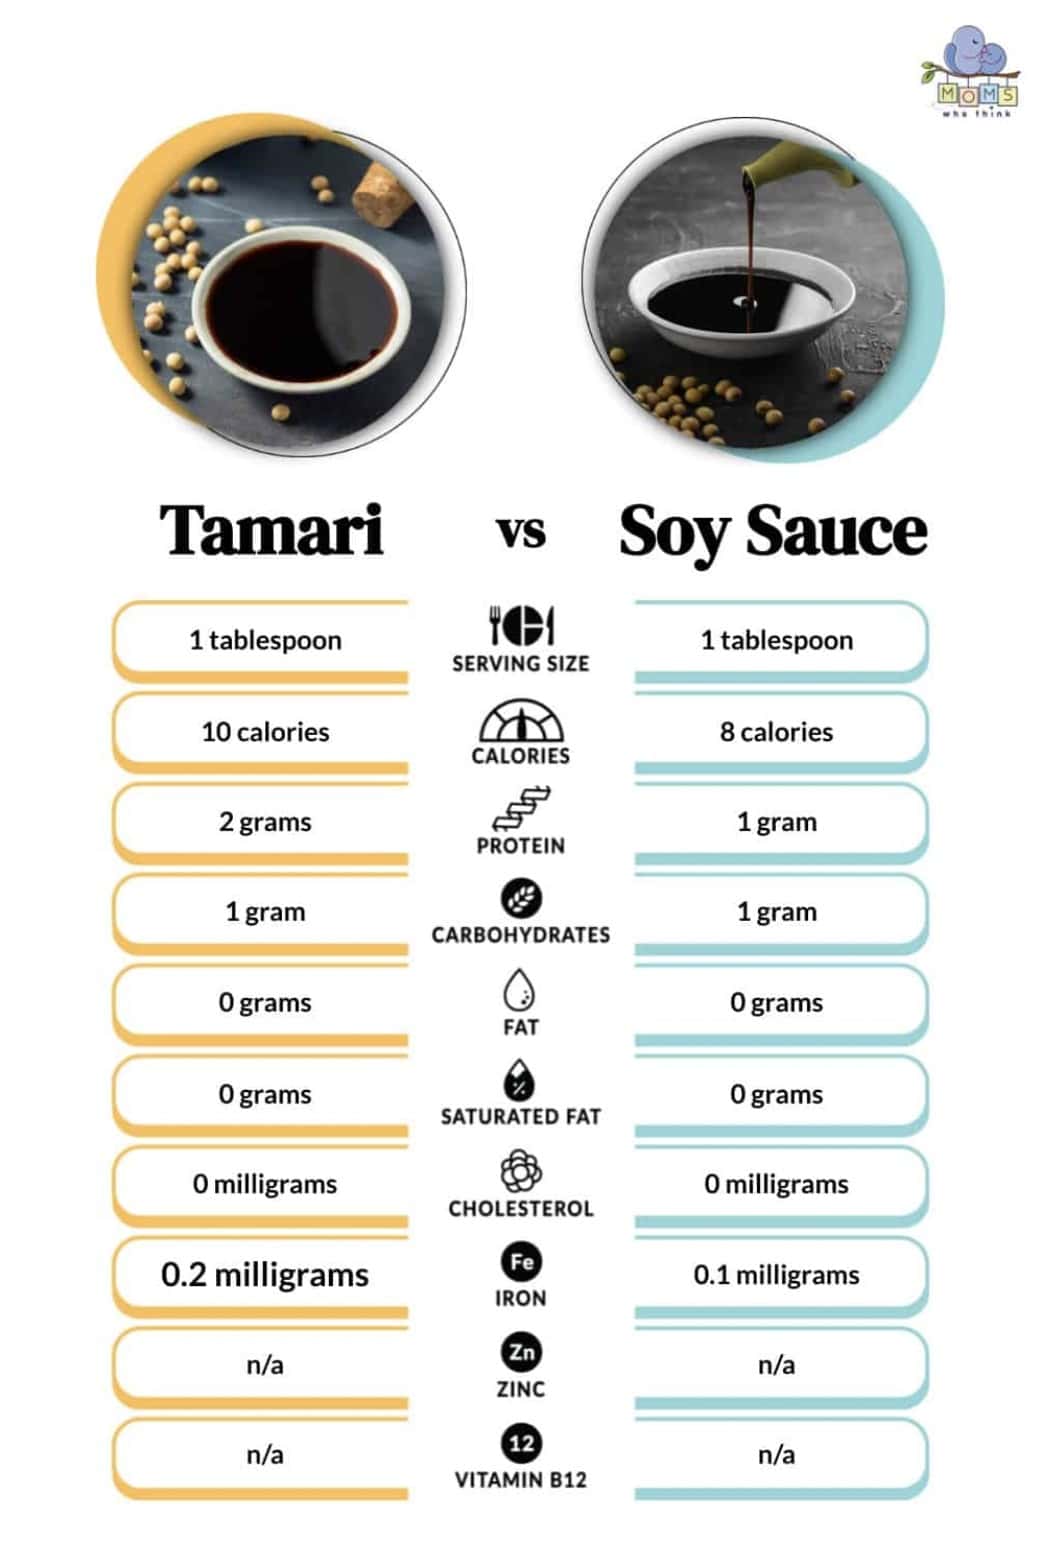 Tamari vs. Soy sauce